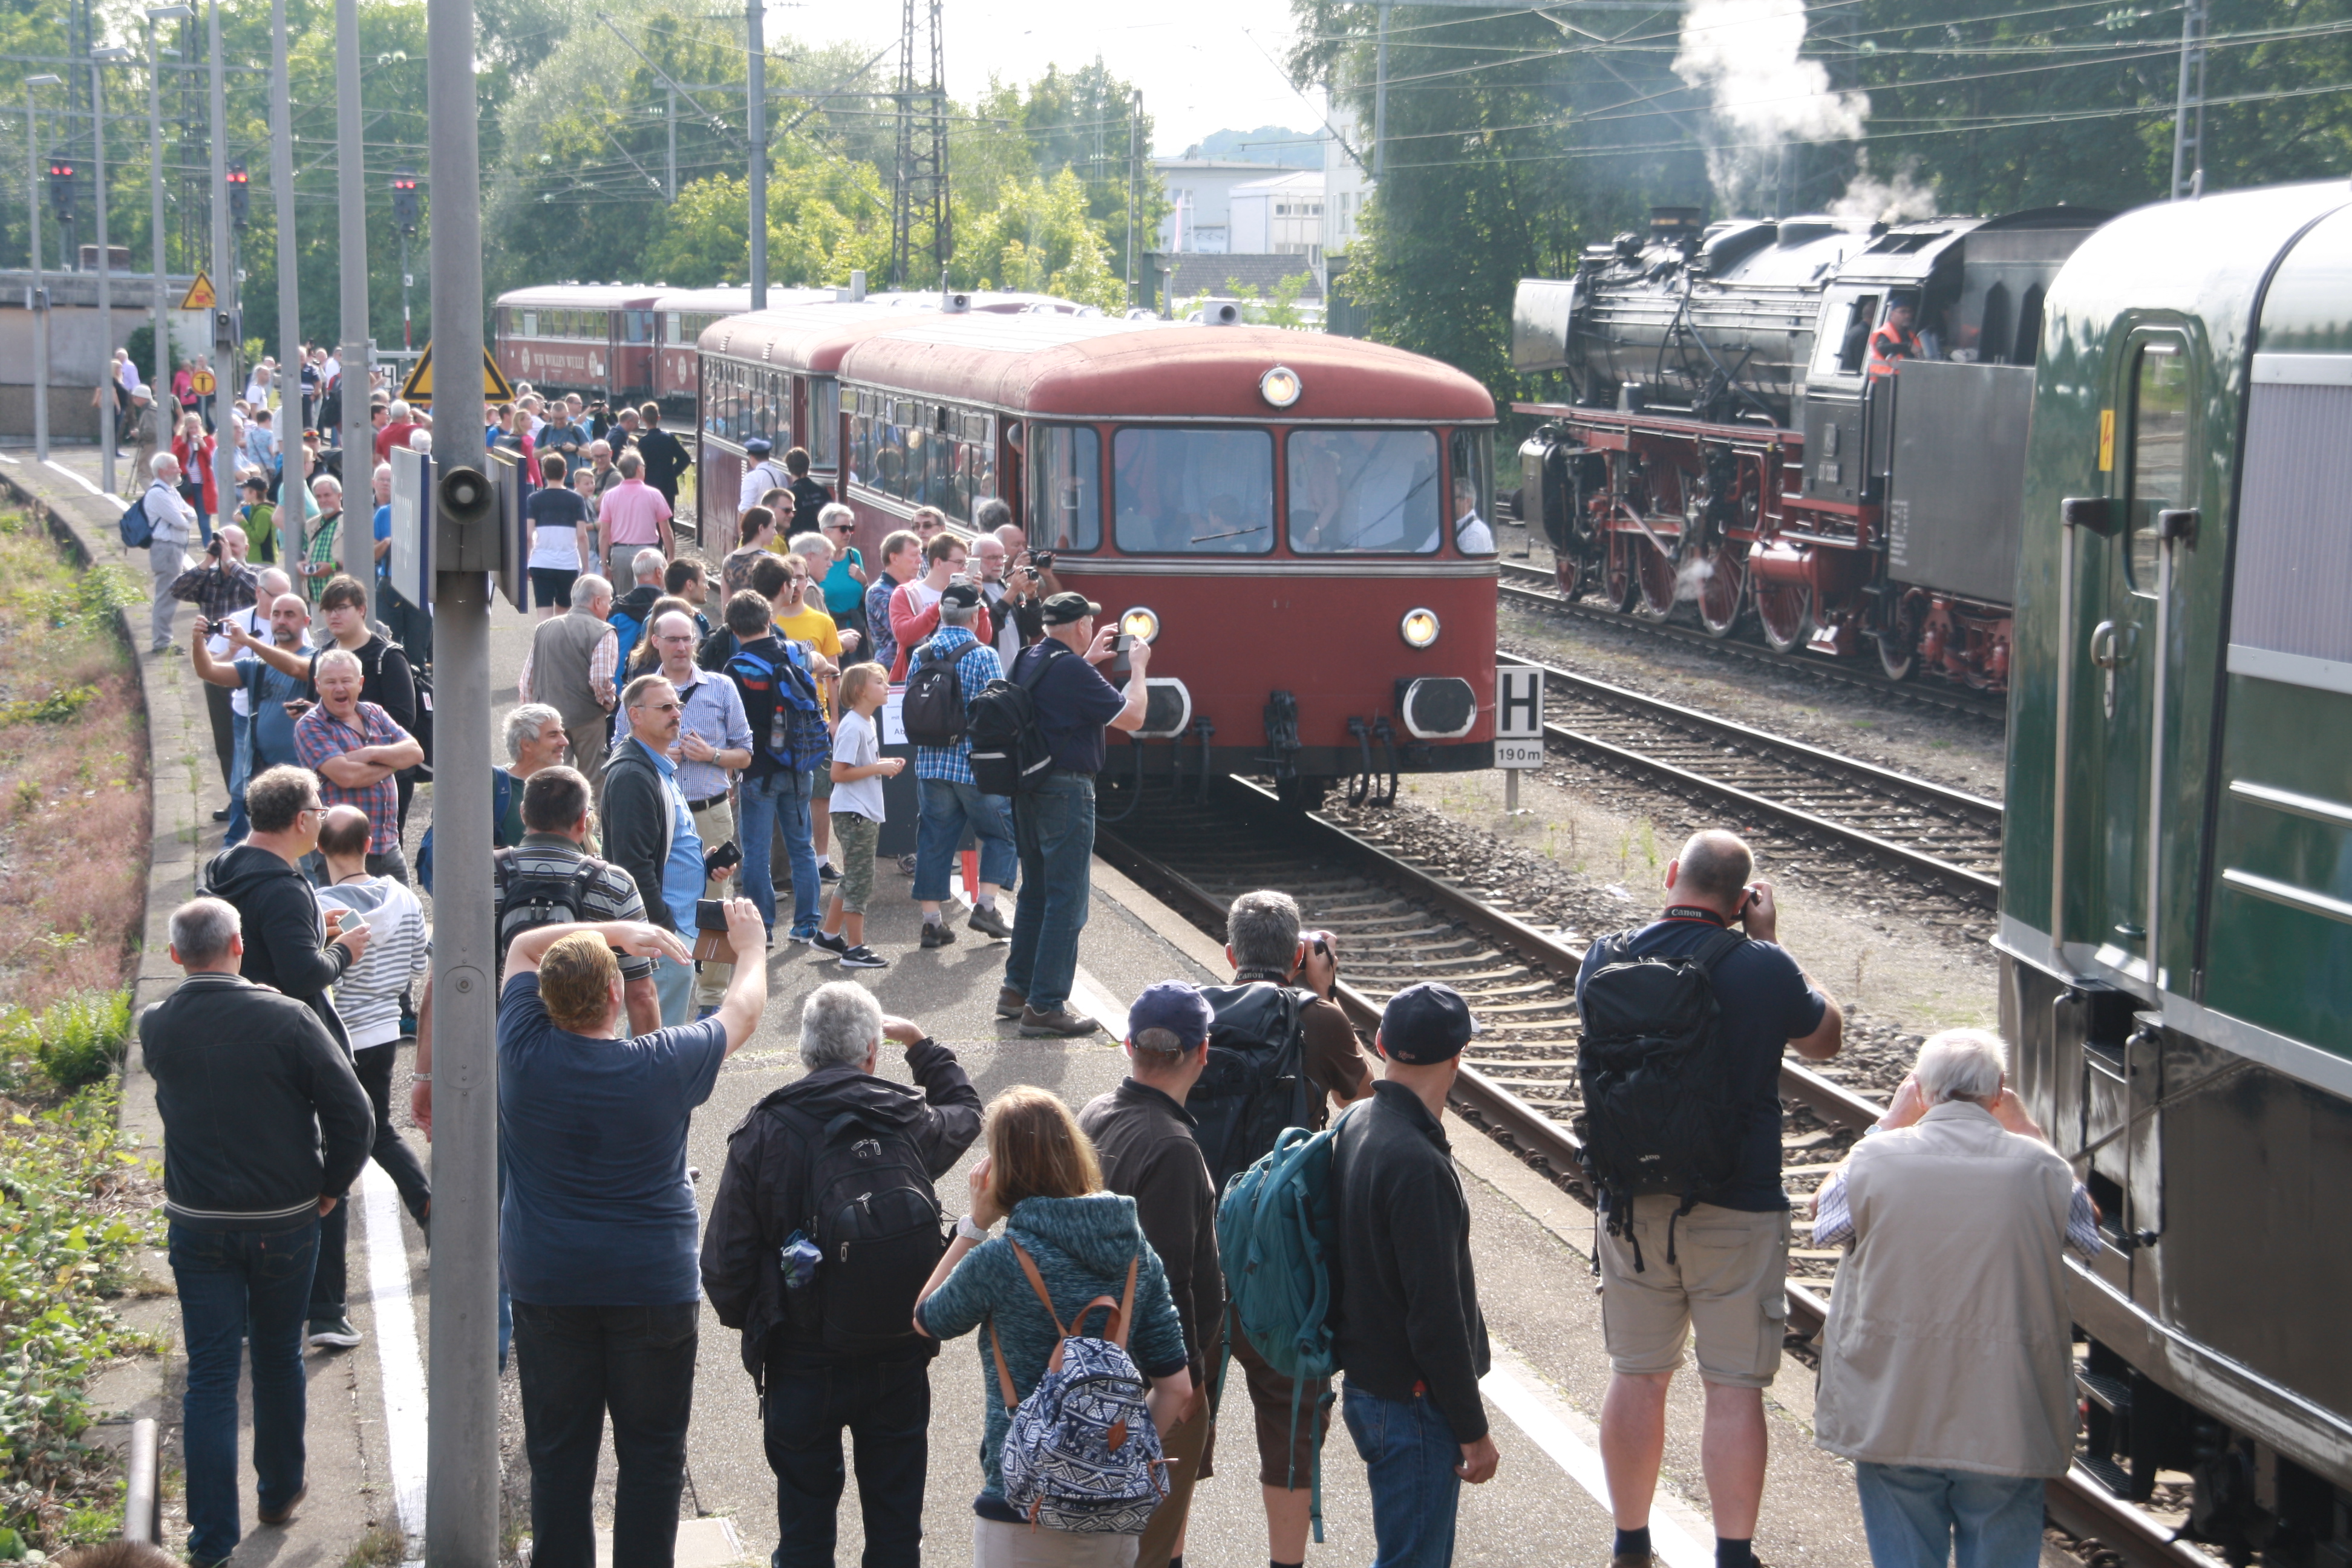 Dampf- und Dieselloks, Triebzge, E-Loks - Am Bahnhof in Gppingen ist einiges geboten.